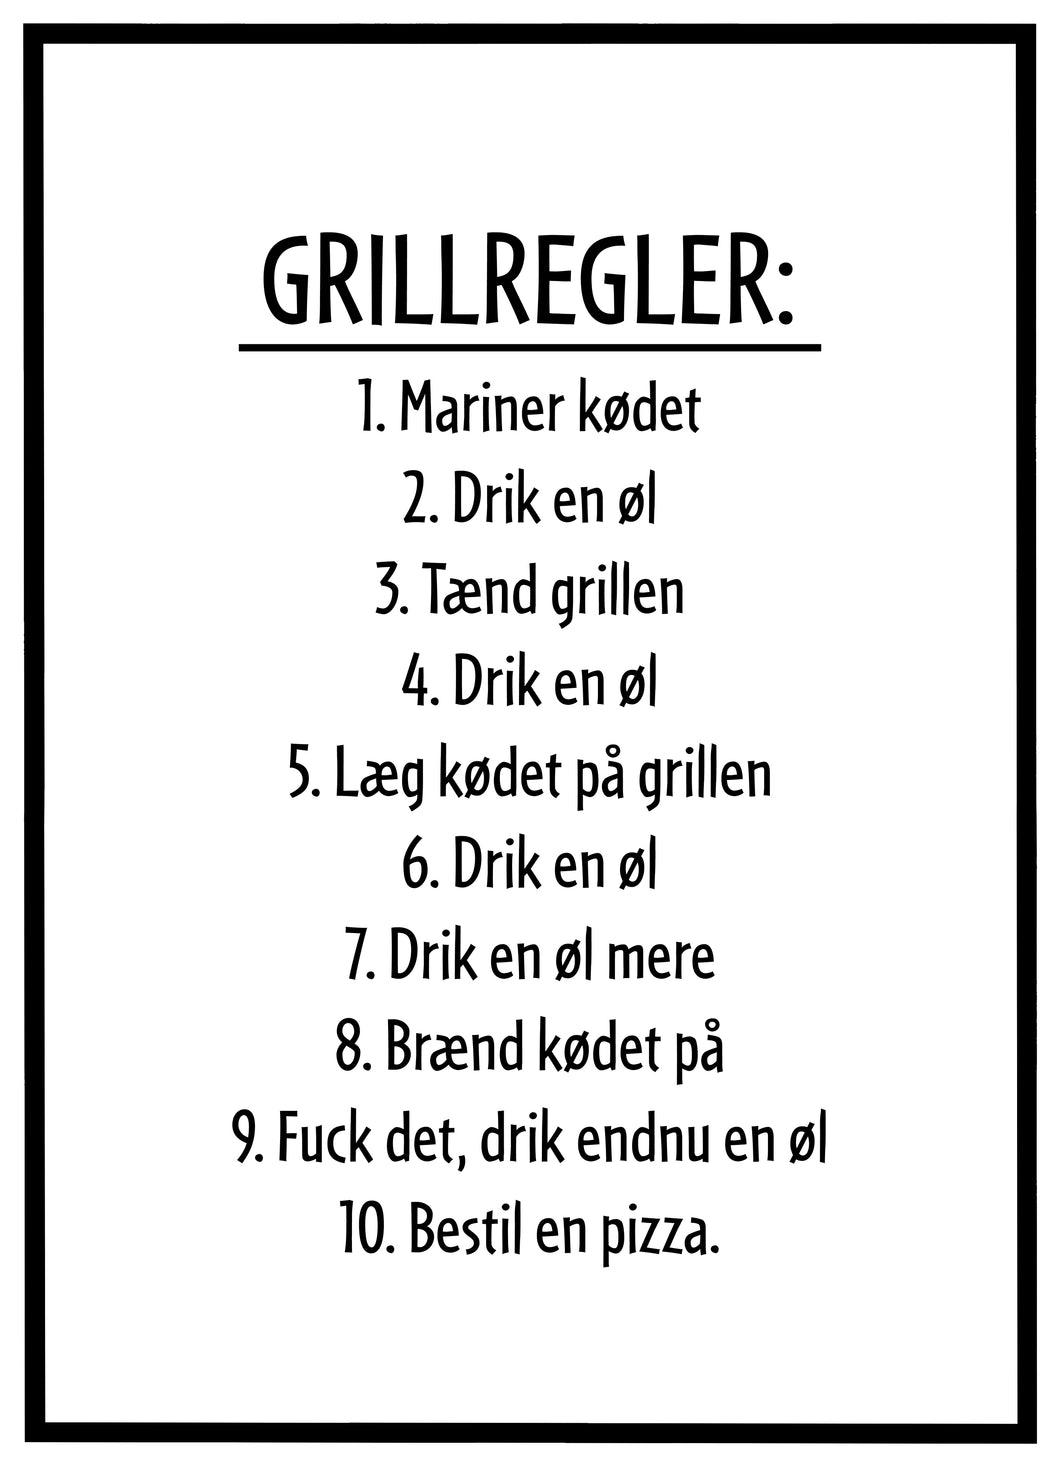 Grill Regler - Plakat